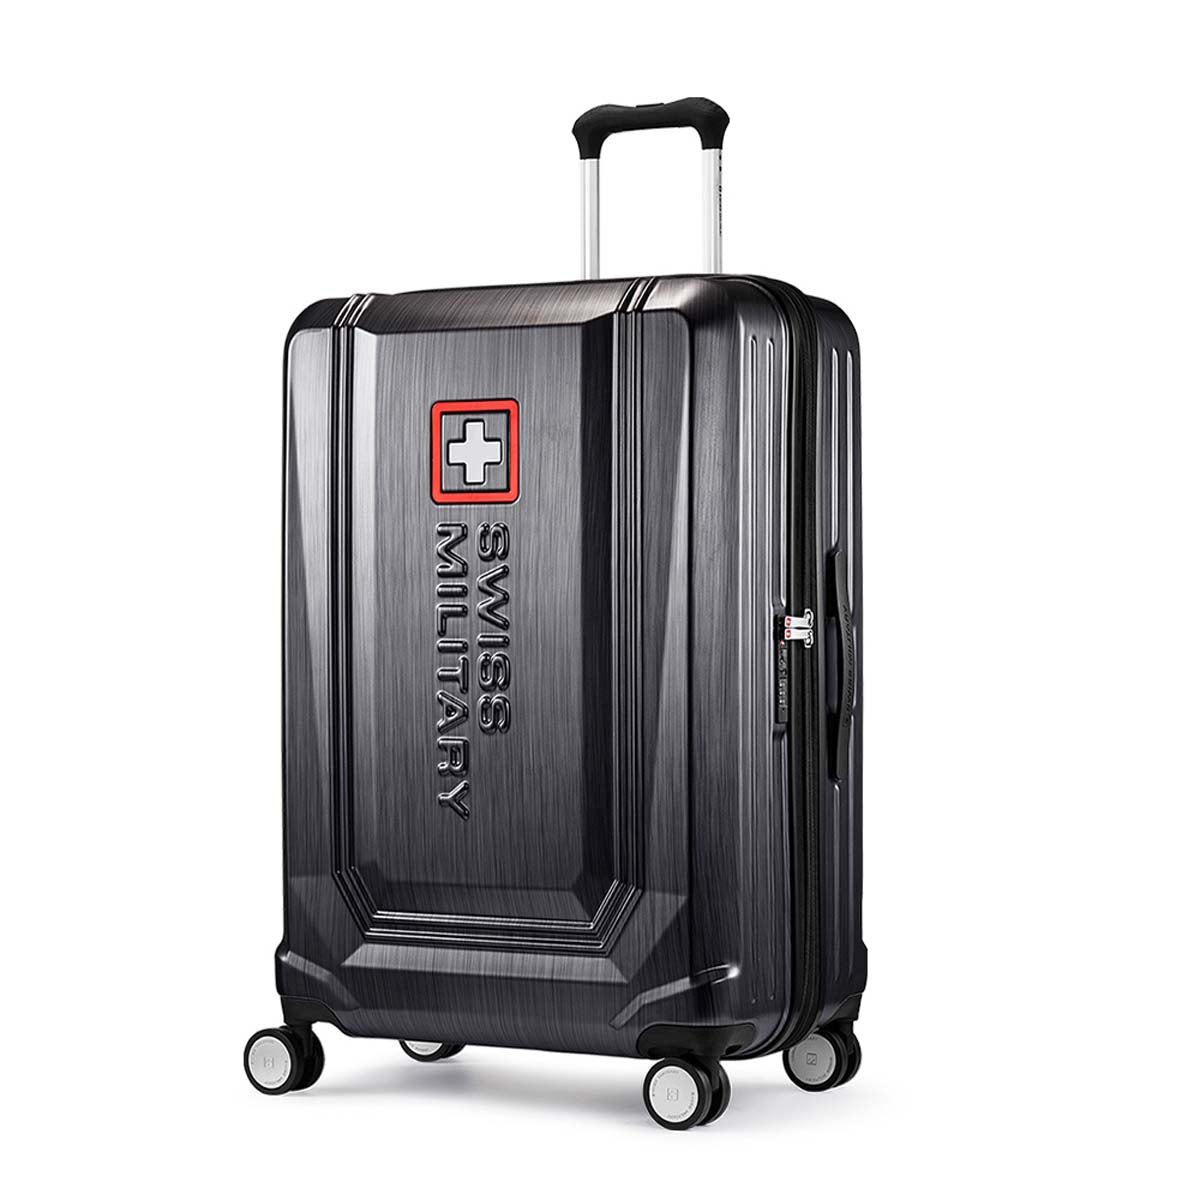 スーツケース 大型 Lサイズ 一週間以上 74cm BROQUEL(ブロッケル) チタングレー